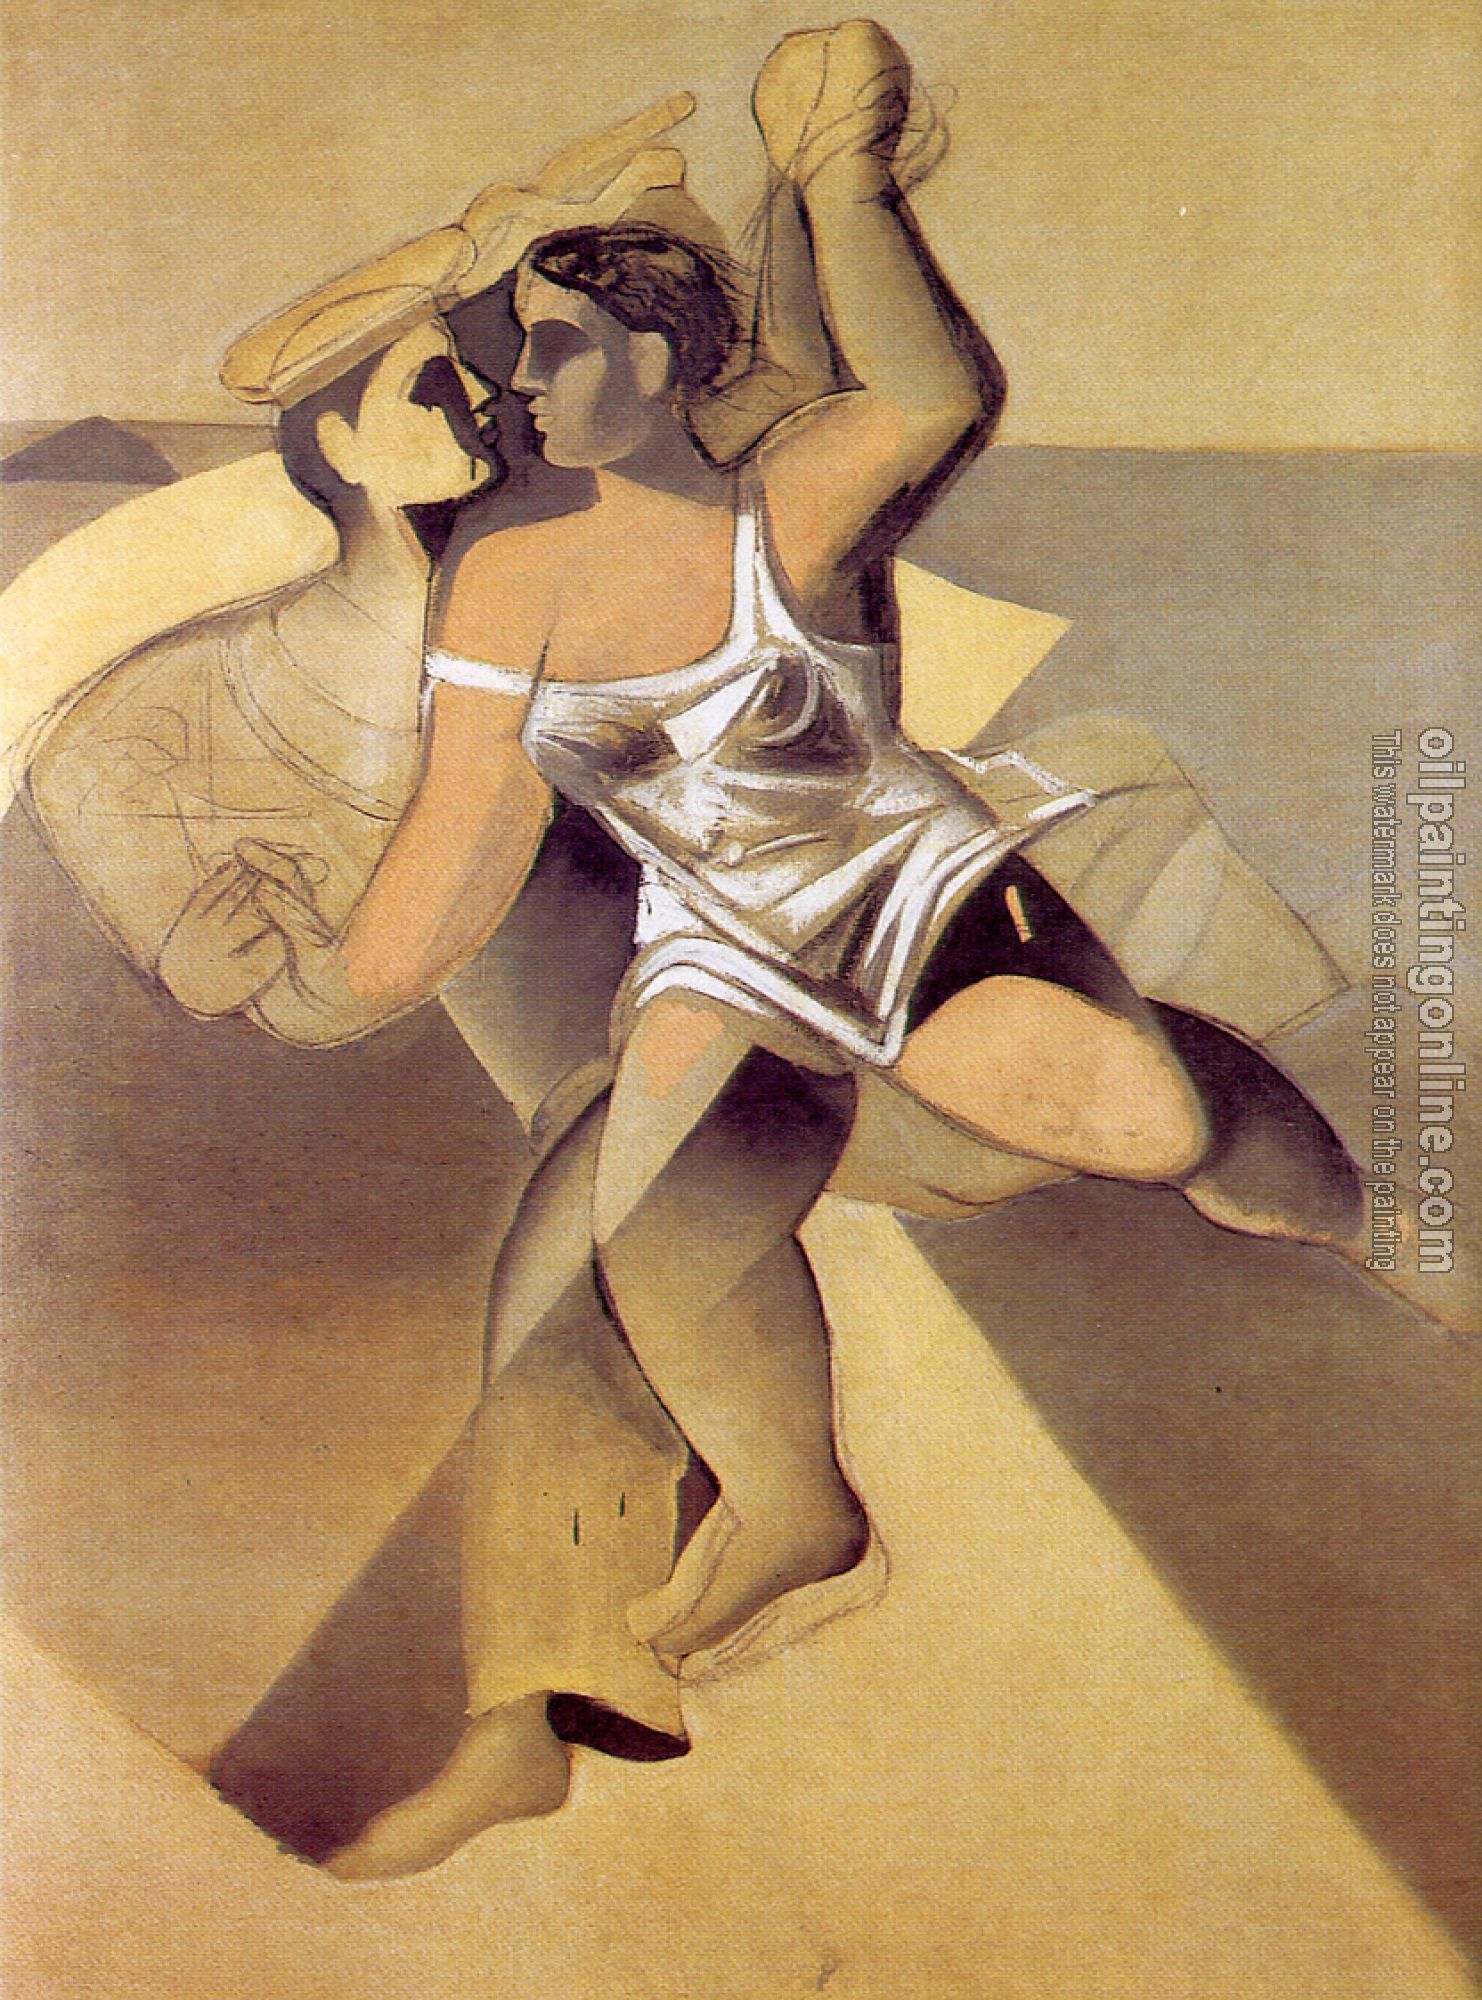 Dali, Salvador - Venus and Sailor